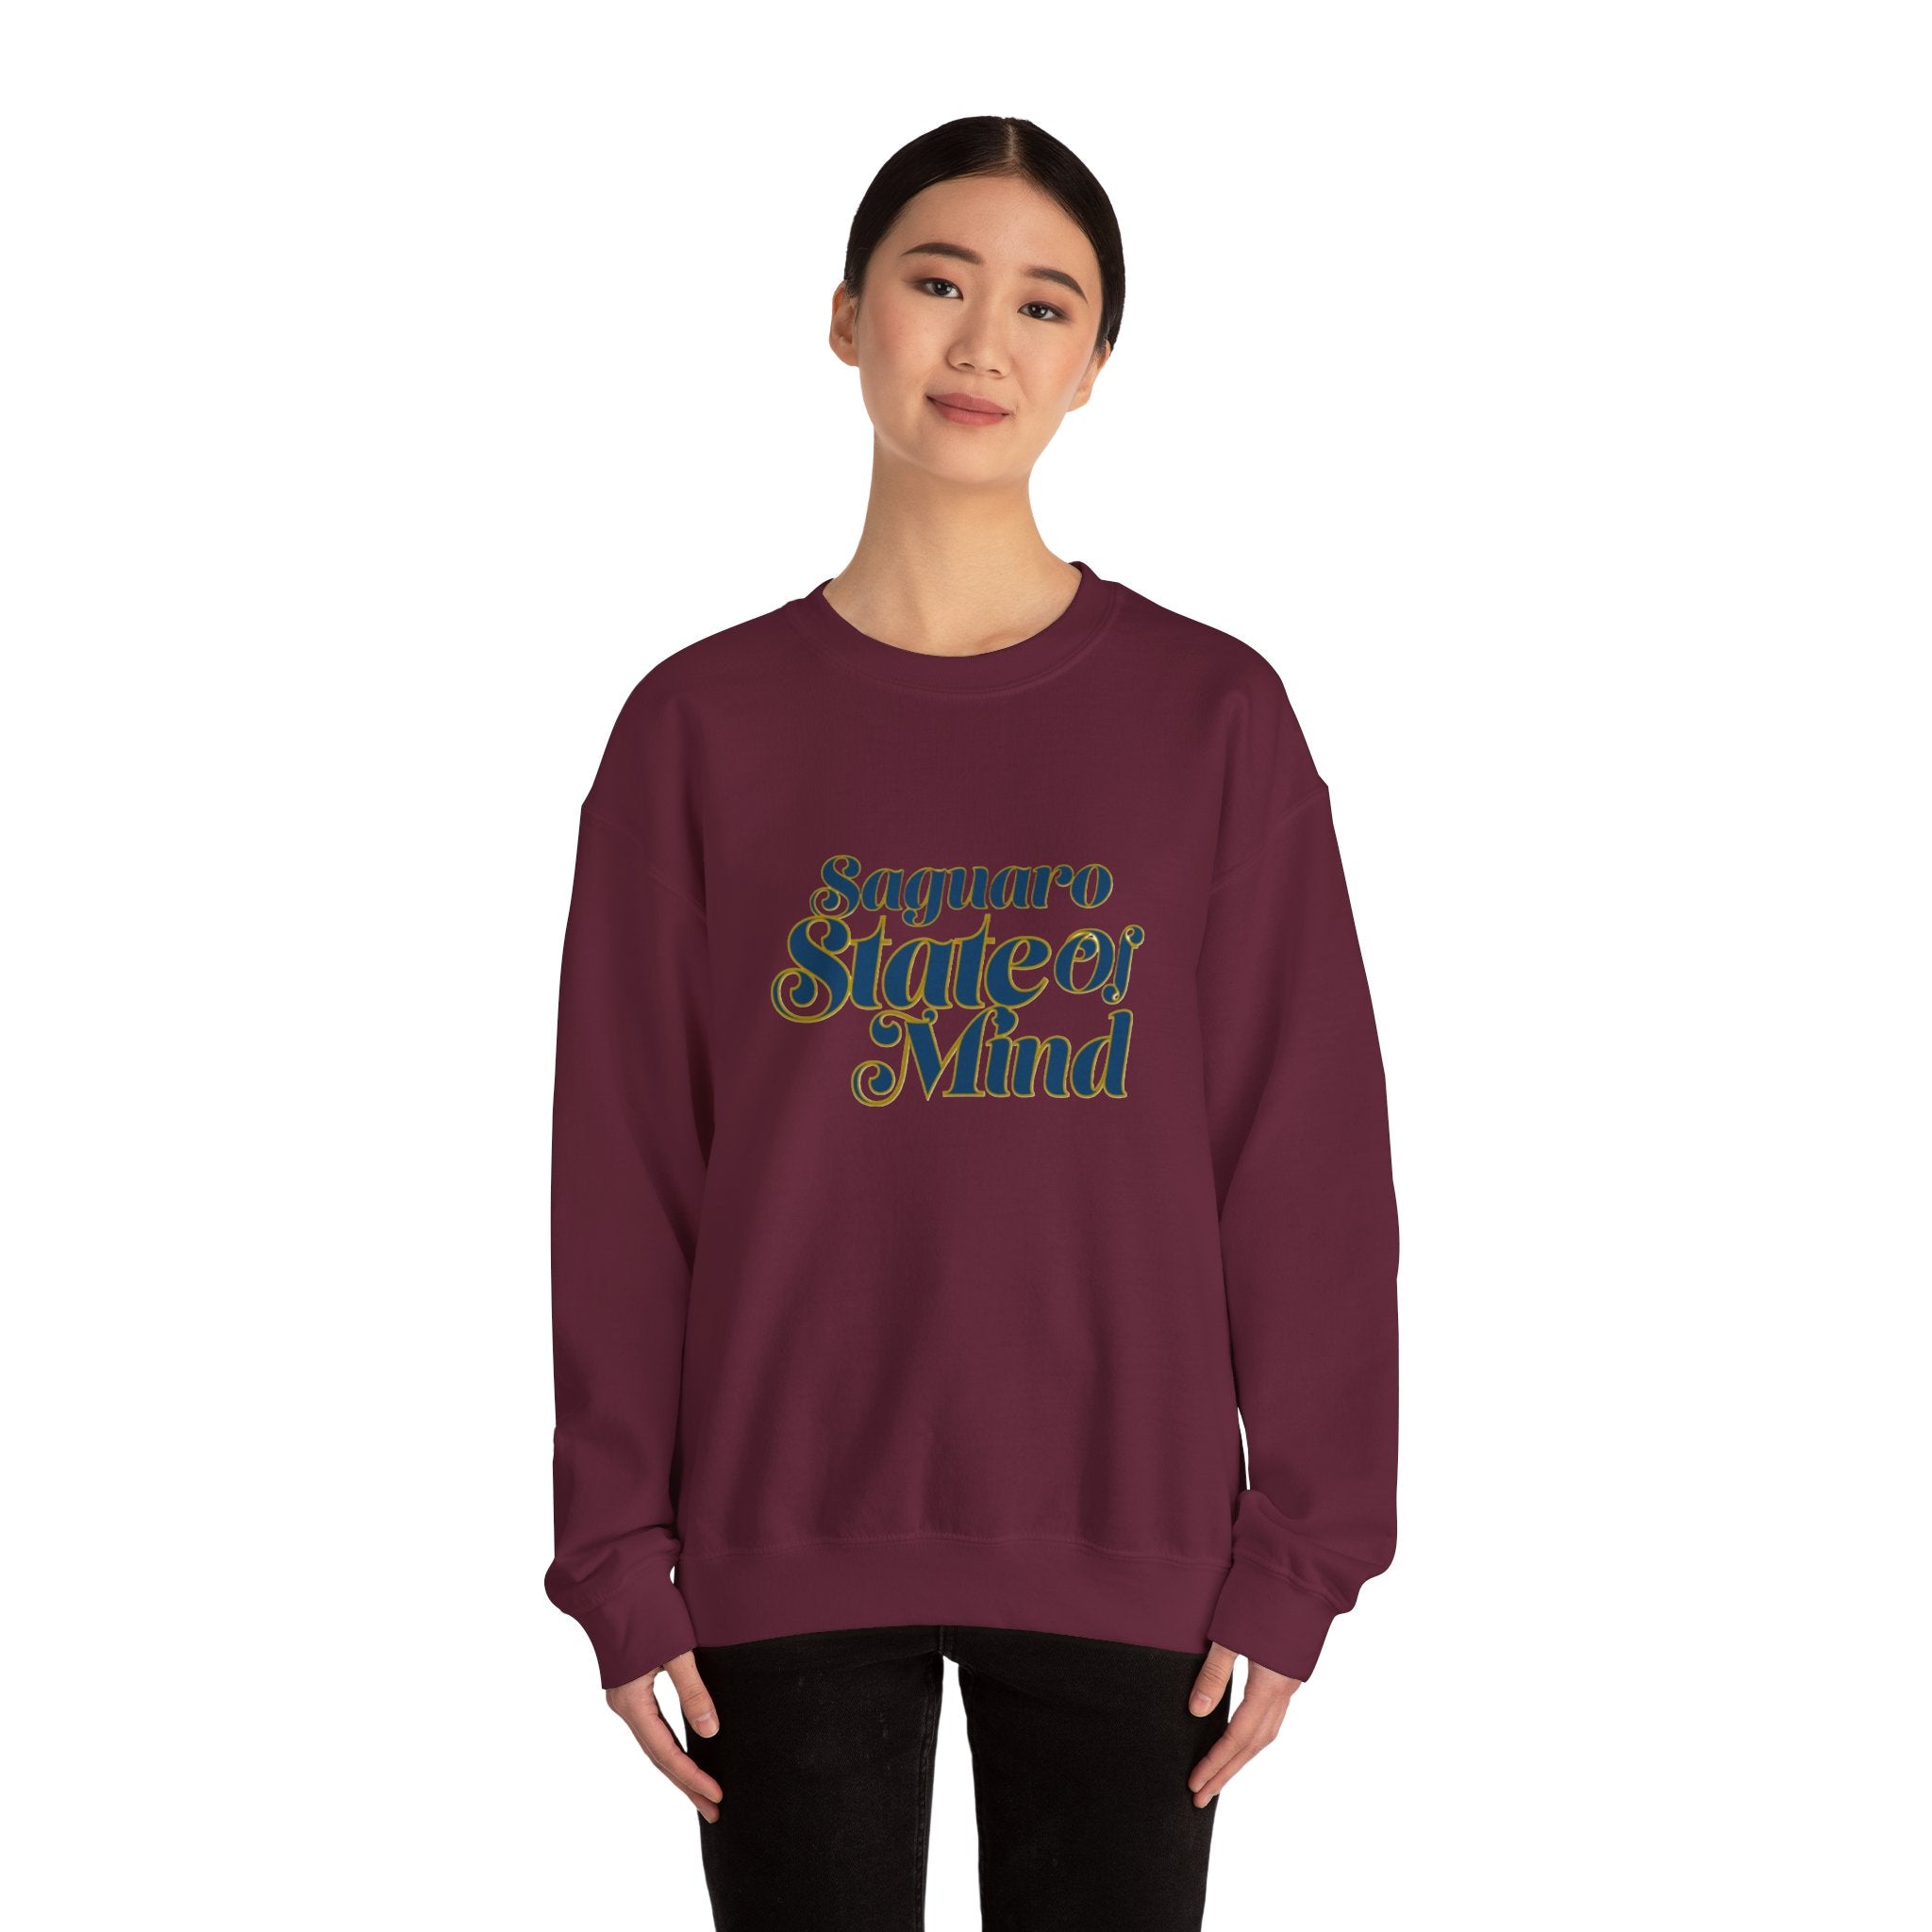 Saguaro State of Mind Sweatshirt